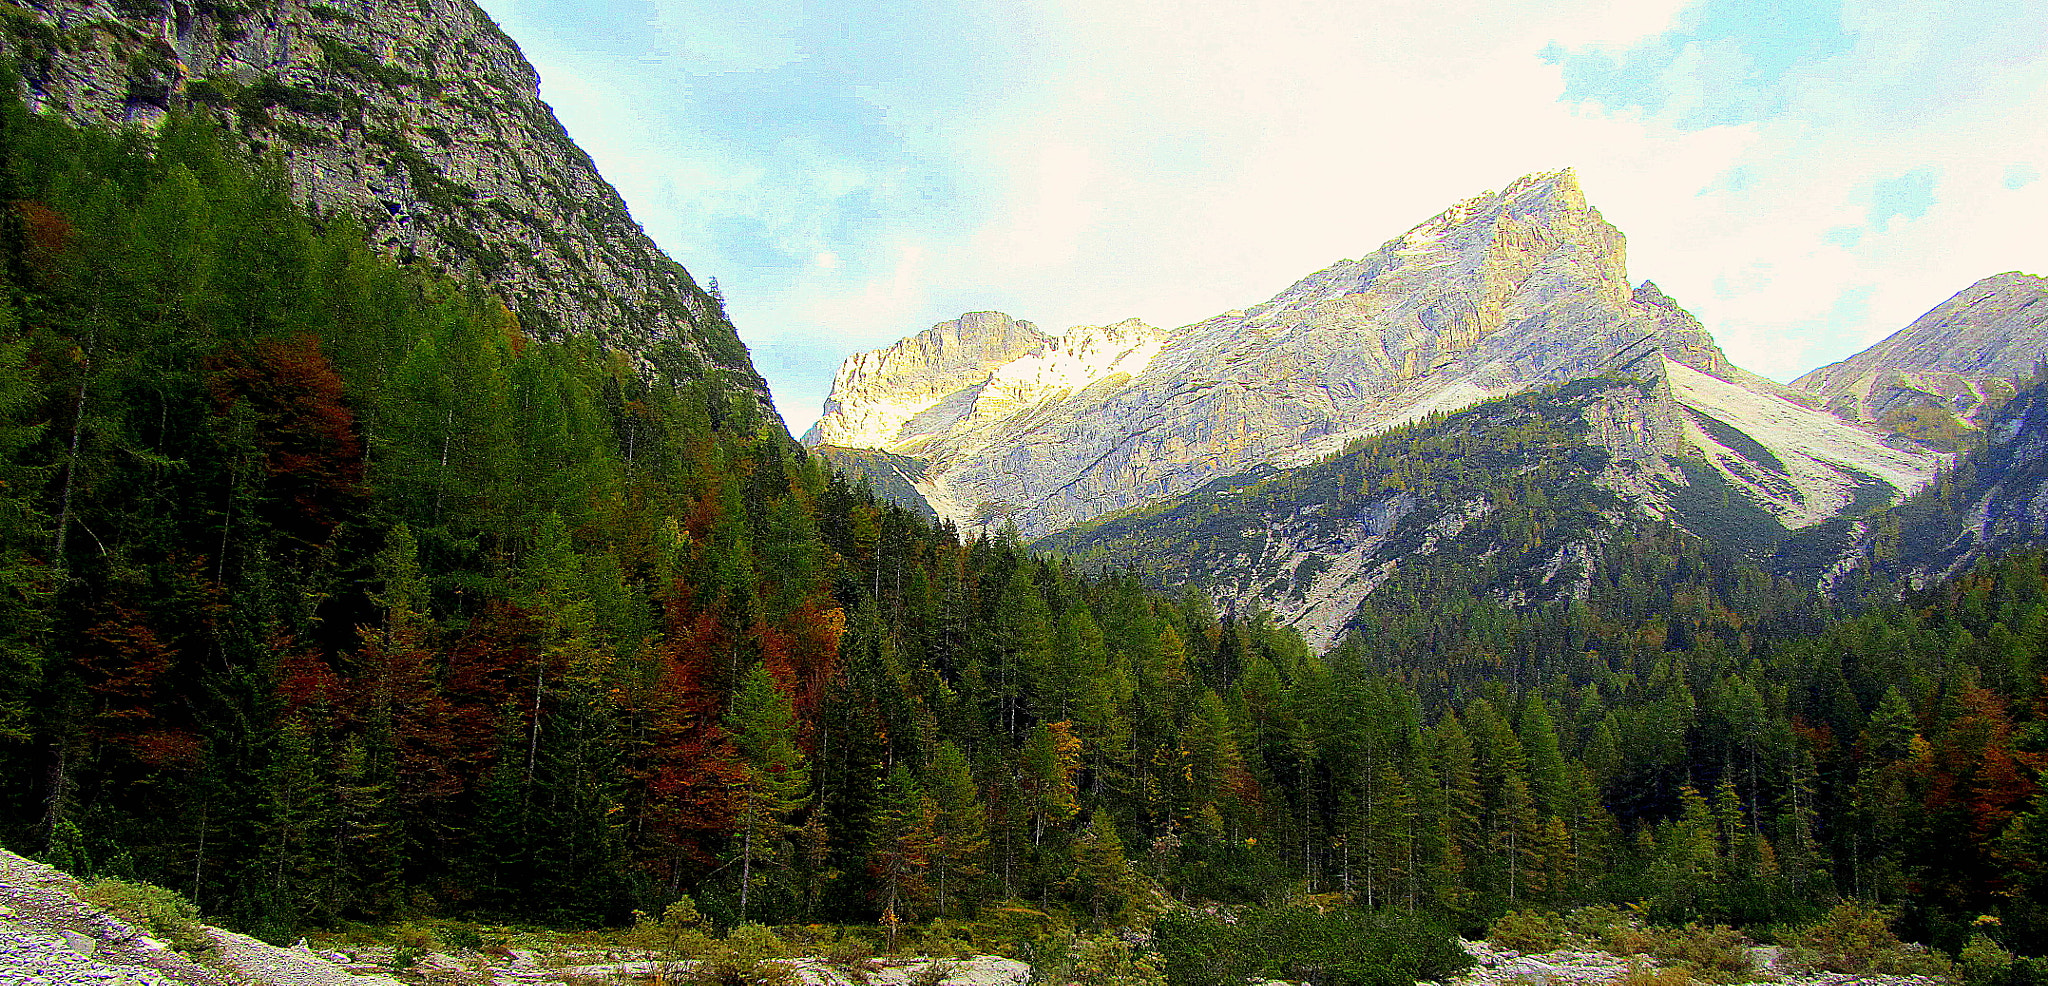 Canon PowerShot SX210 IS sample photo. Paesaggio di montagna, camminando tra le pinete. photography